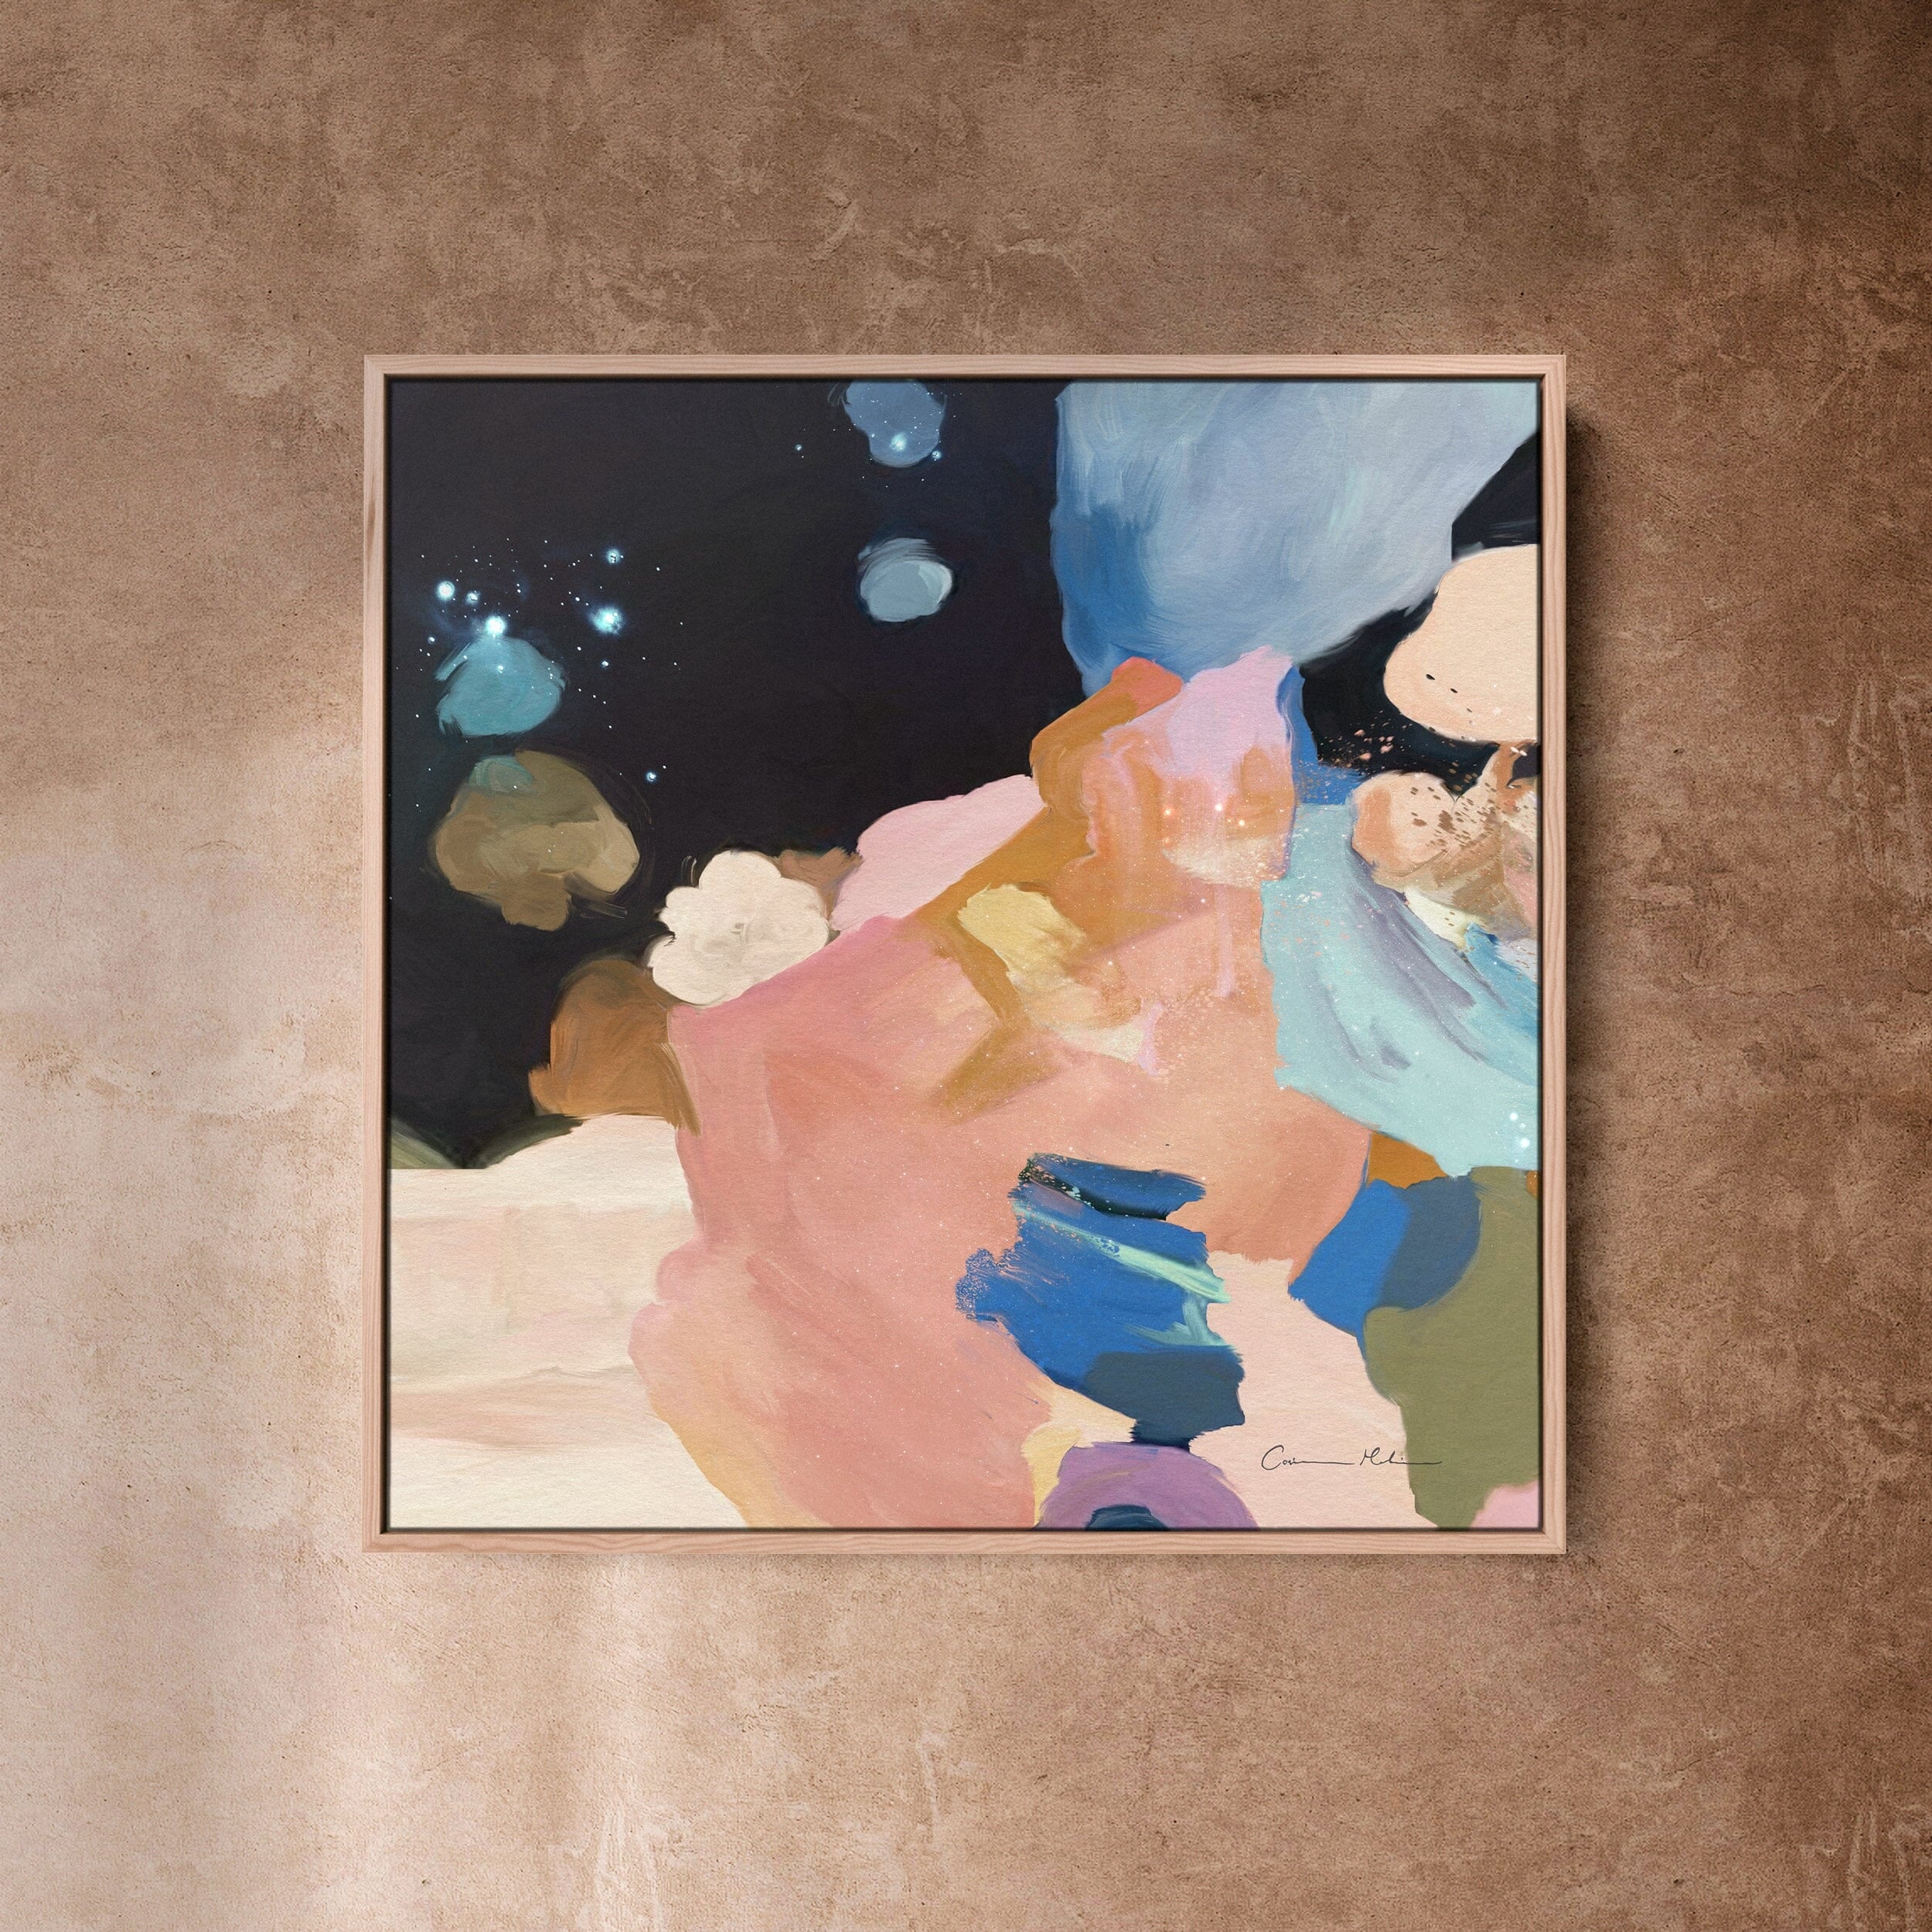 "Clara Auri No. 6" on Canvas Canvas Wall Art Corinne Melanie Professionally Framed - Oak 20x20in / 50x50cm 